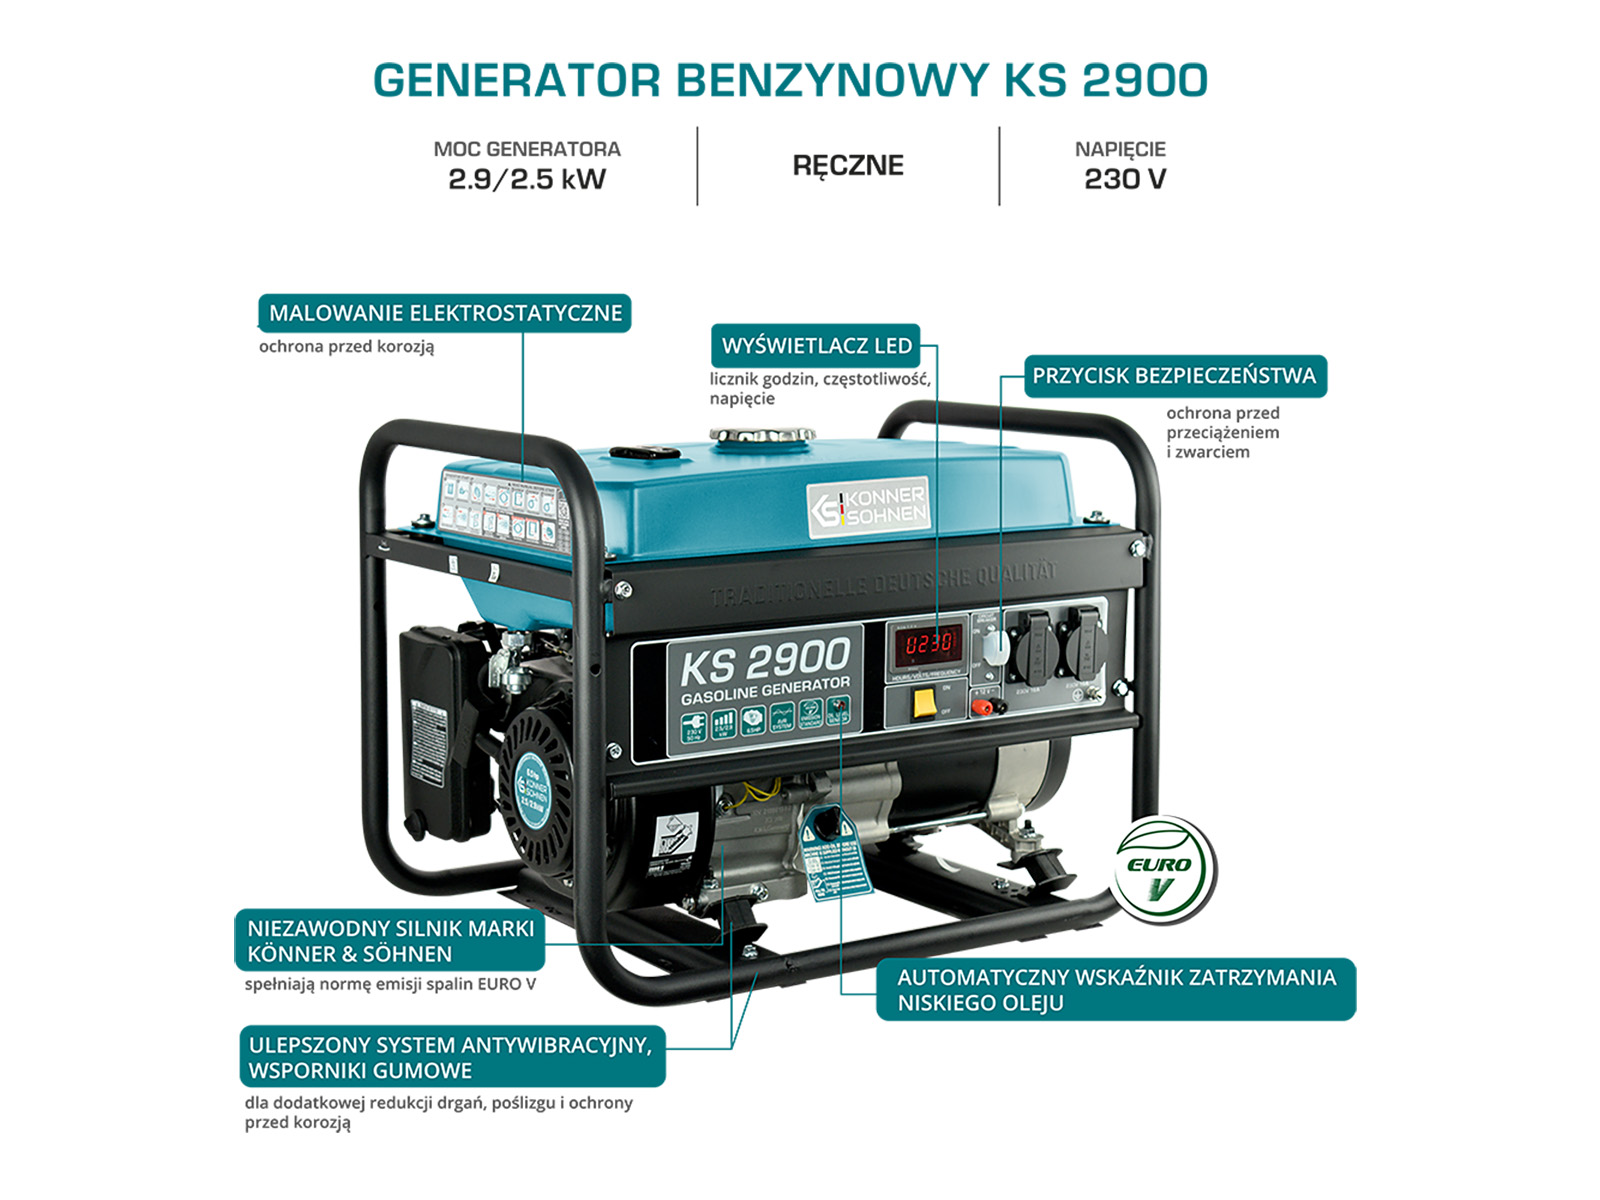 Generator benzynowy "Könner & Söhnen" KS 2900